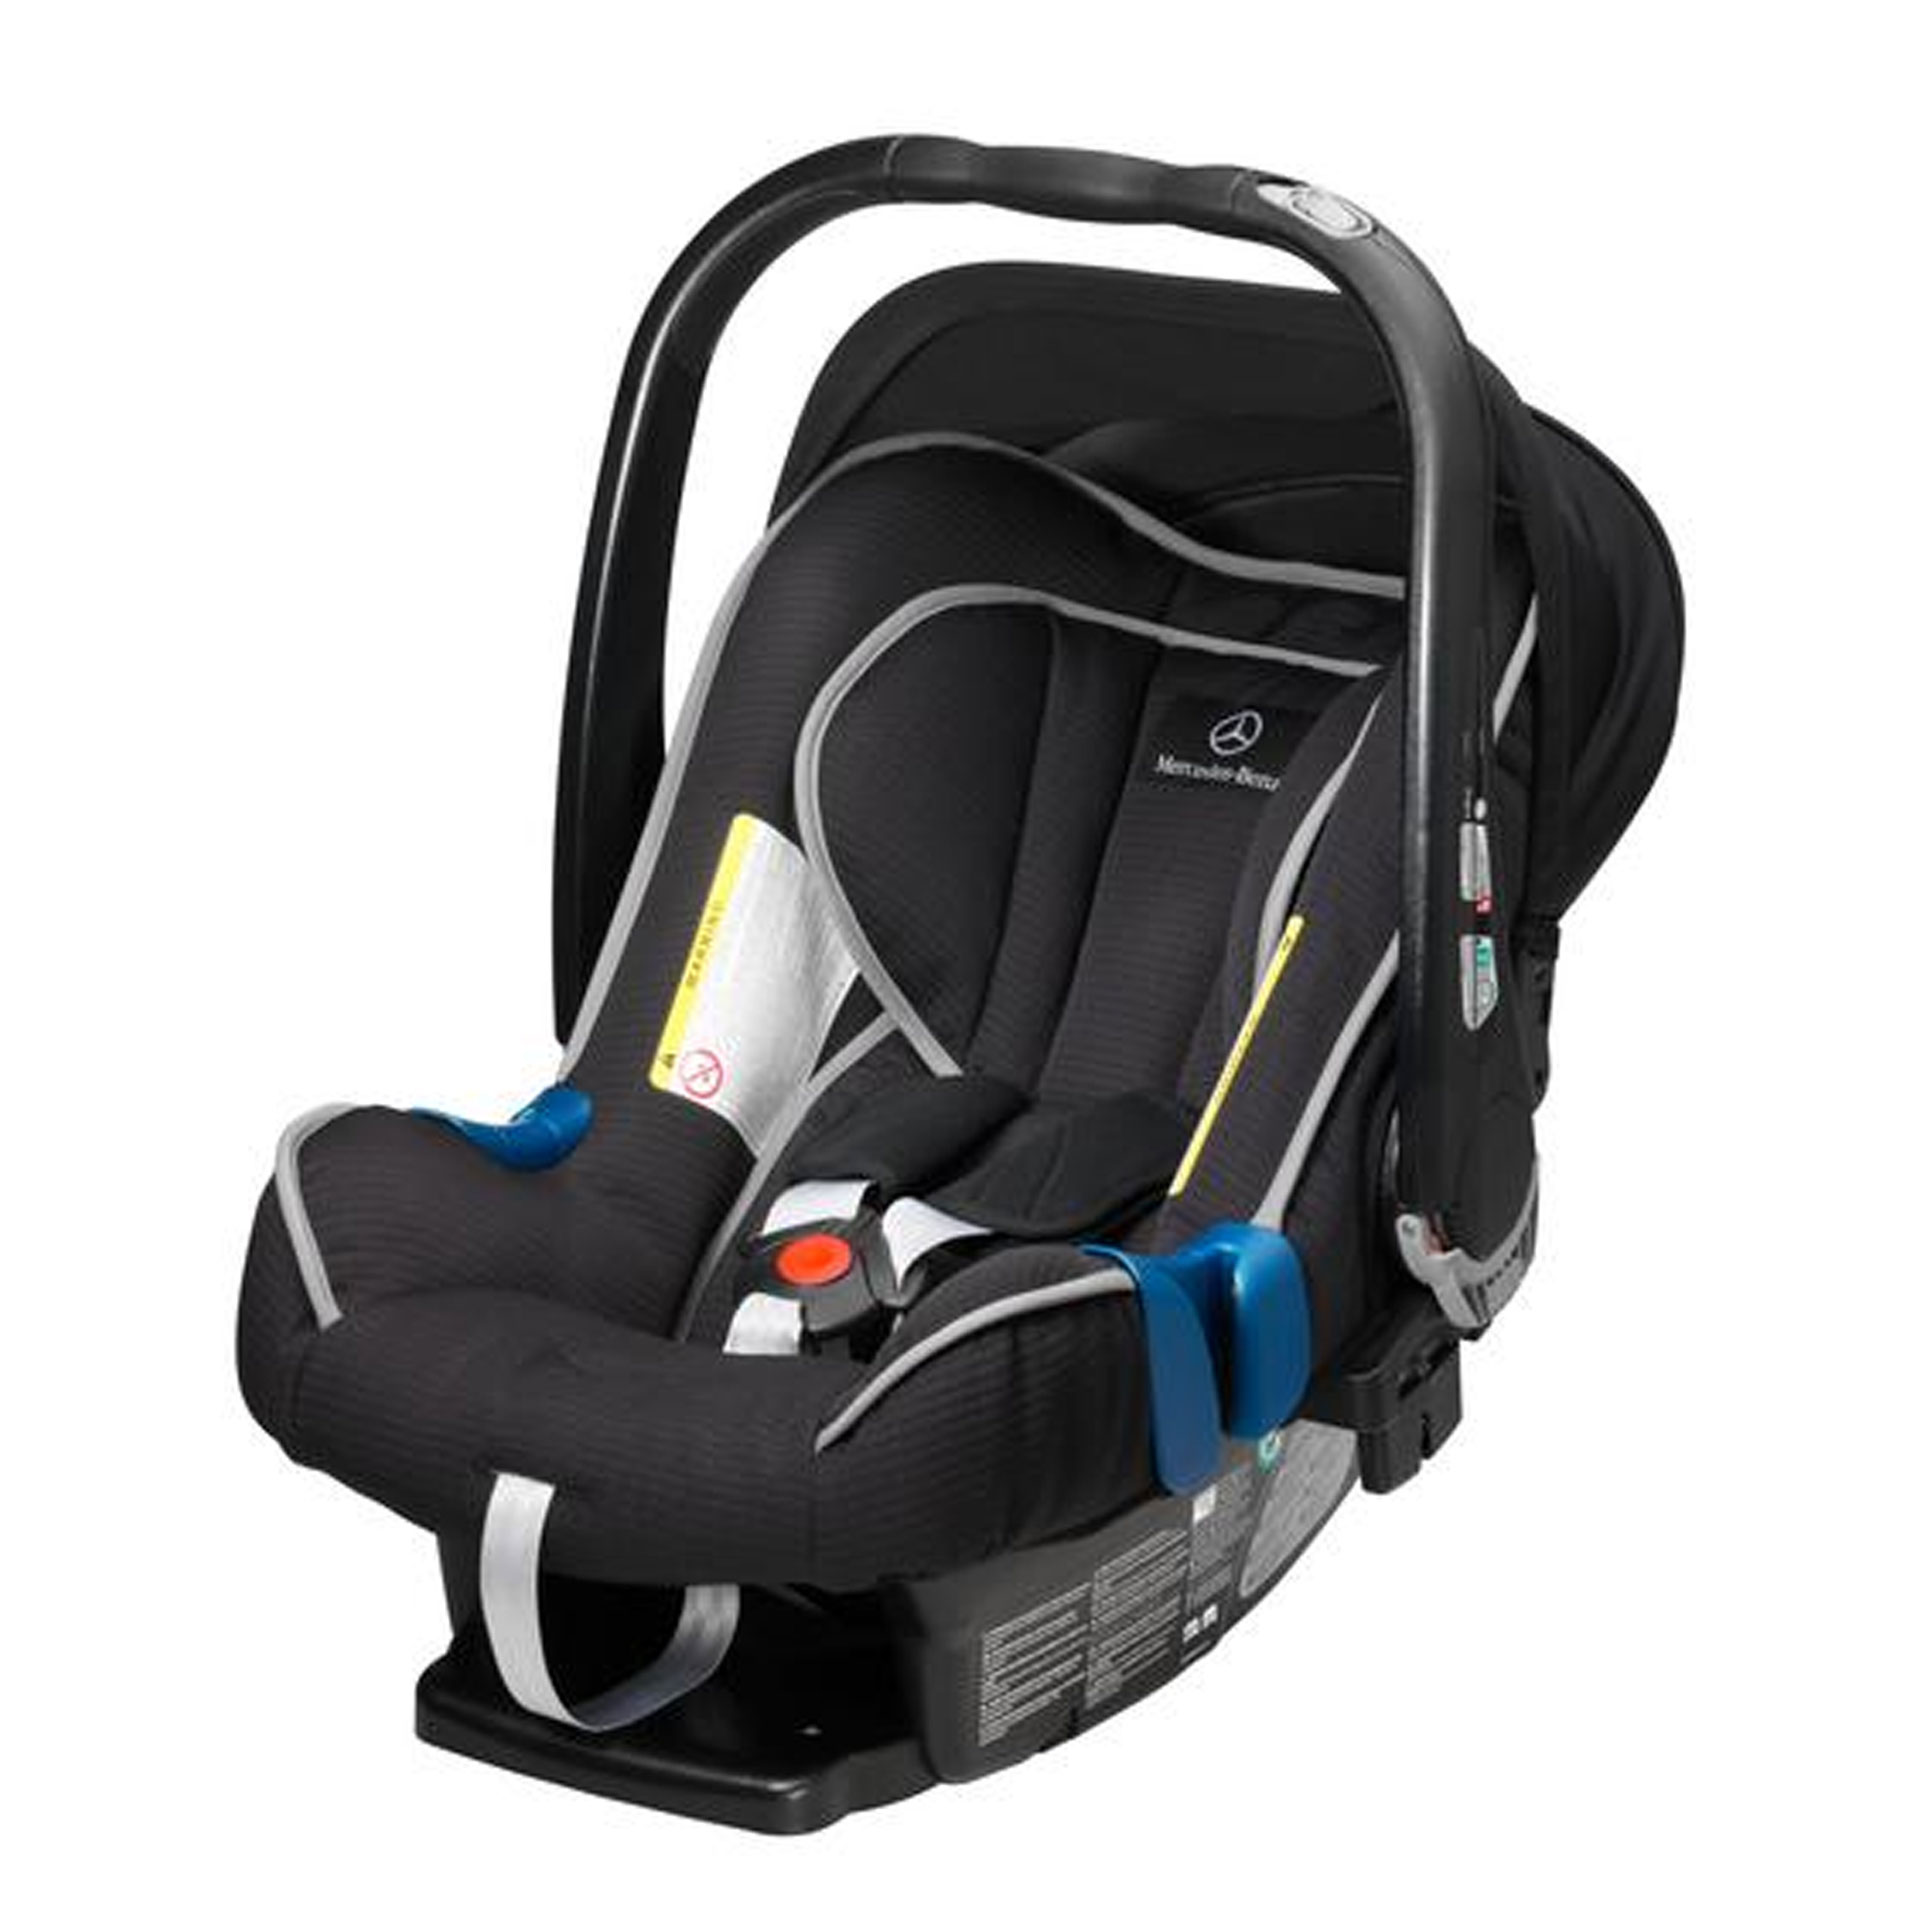 Mercedes-Benz Ersatzbezug für Kindersitz / Babyschale BABY-SAFE plus II schwarz